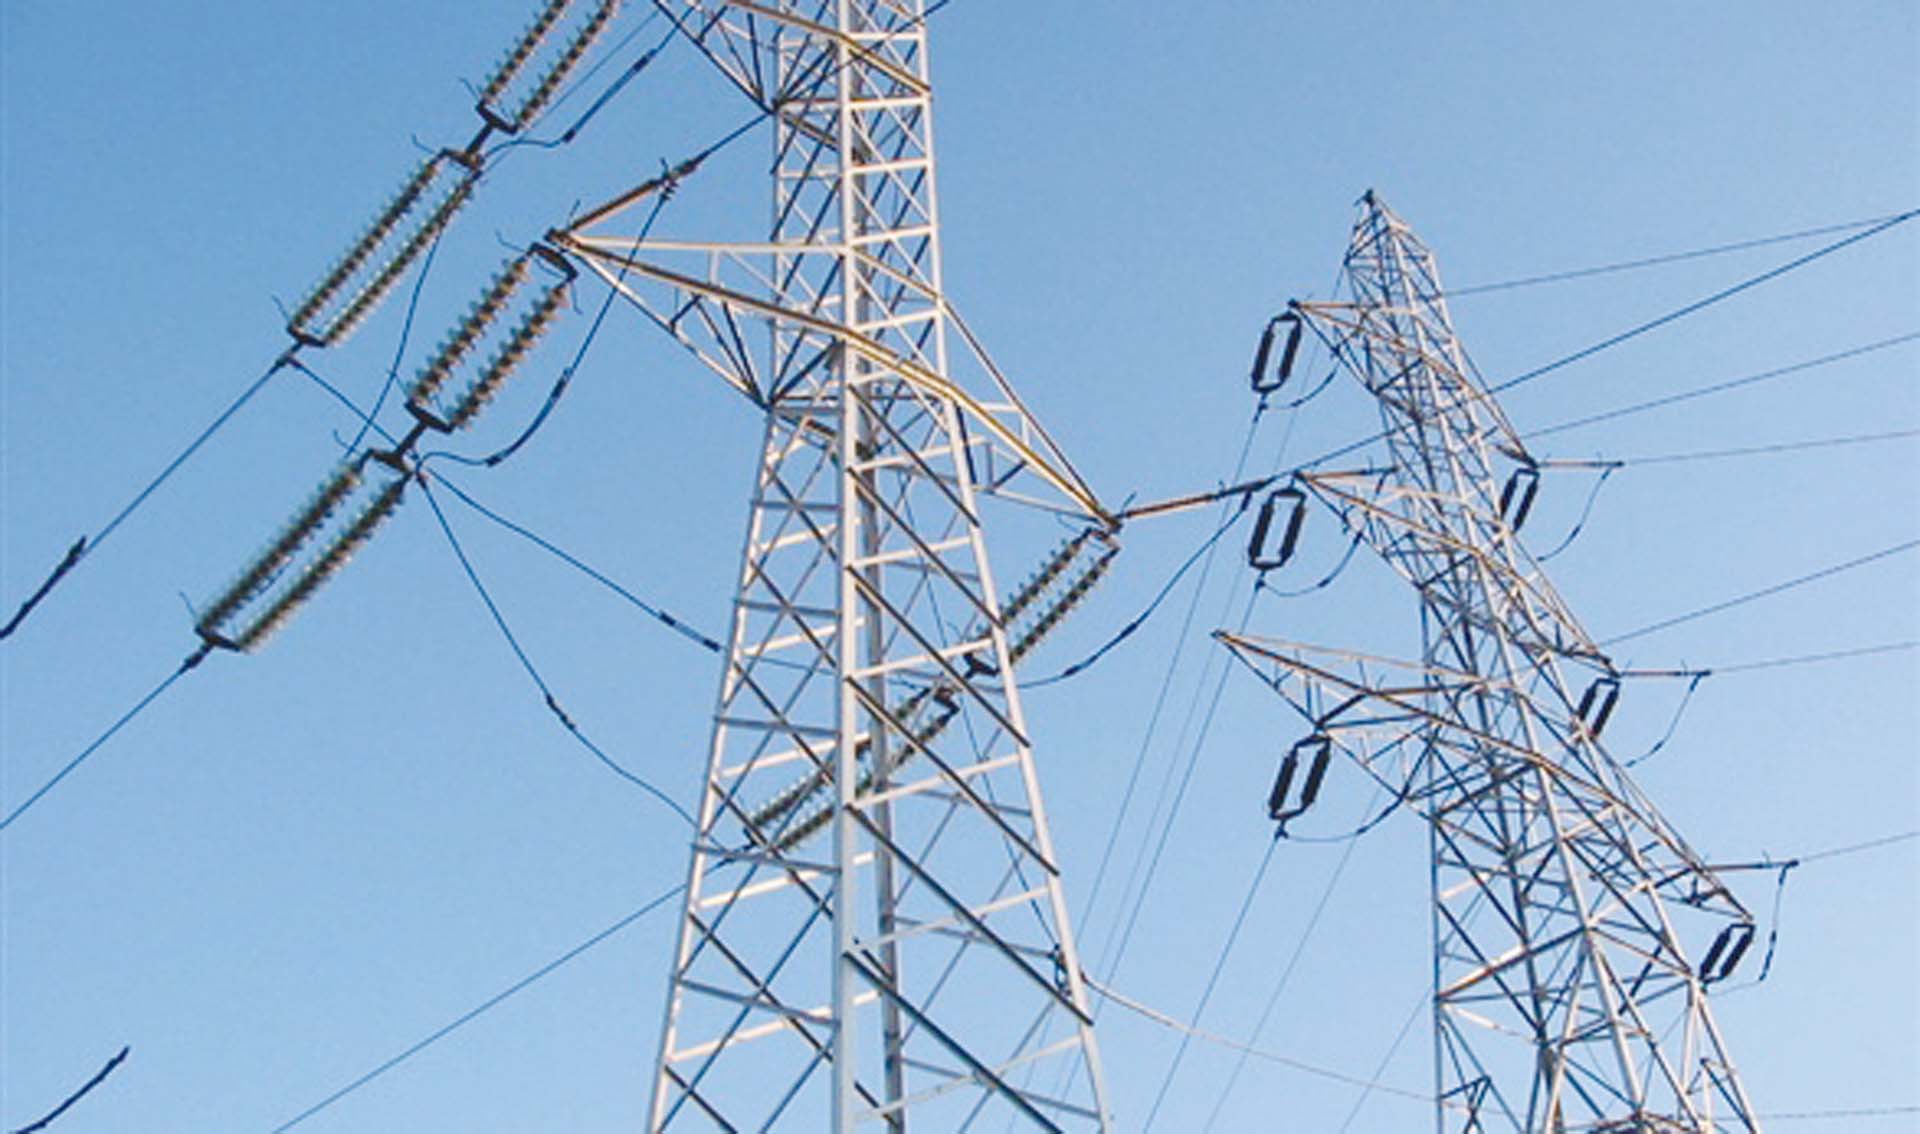 الكهرباء تضخ 500 مليون جنيه استثمارات بمحافظة أسوان - جريدة المال